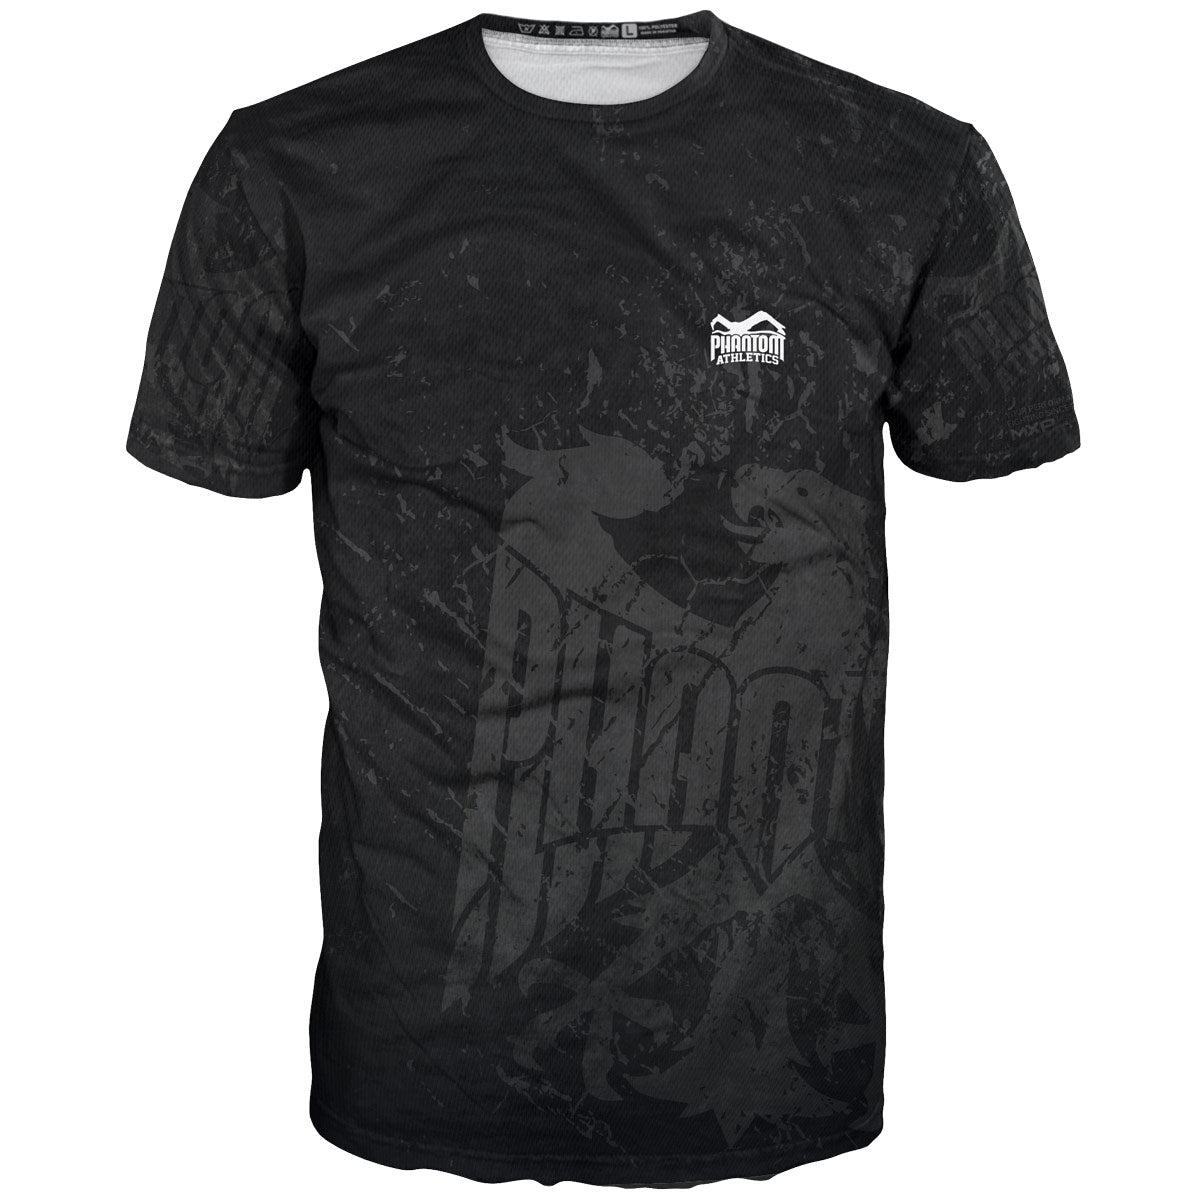 La camiseta de entrenamiento de lucha Phantom EVO con el diseño del equipo de Alemania. Con águila de Alemania y texto "Never Back Down". Ideal para tus deportes de combate, como MMA, Muay Thai, lucha libre, BJJ o kickboxing.